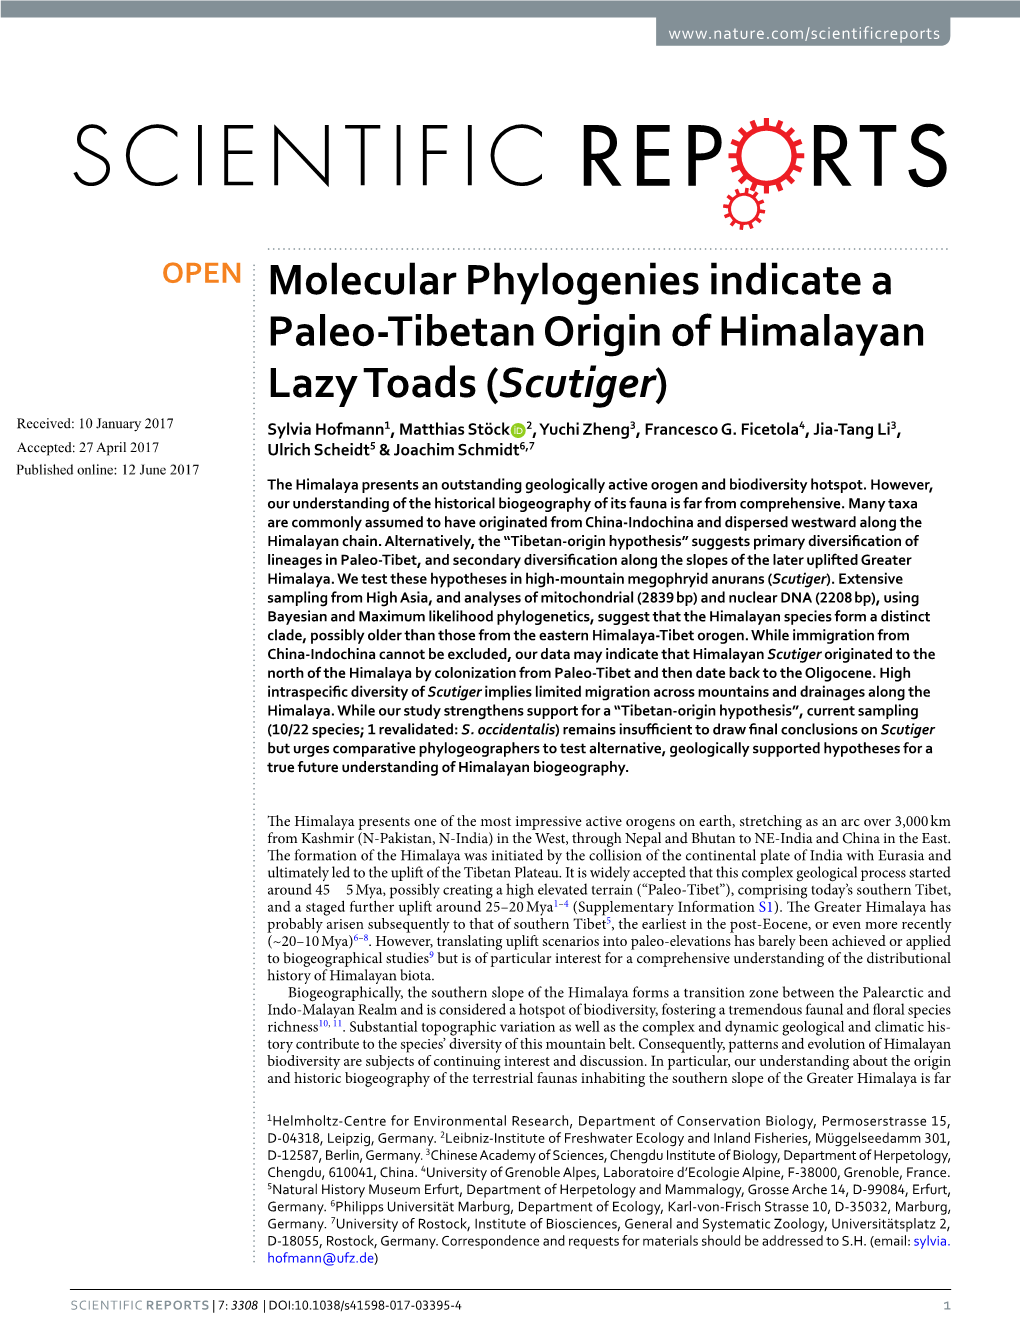 Molecular Phylogenies Indicate a Paleo-Tibetan Origin of Himalayan